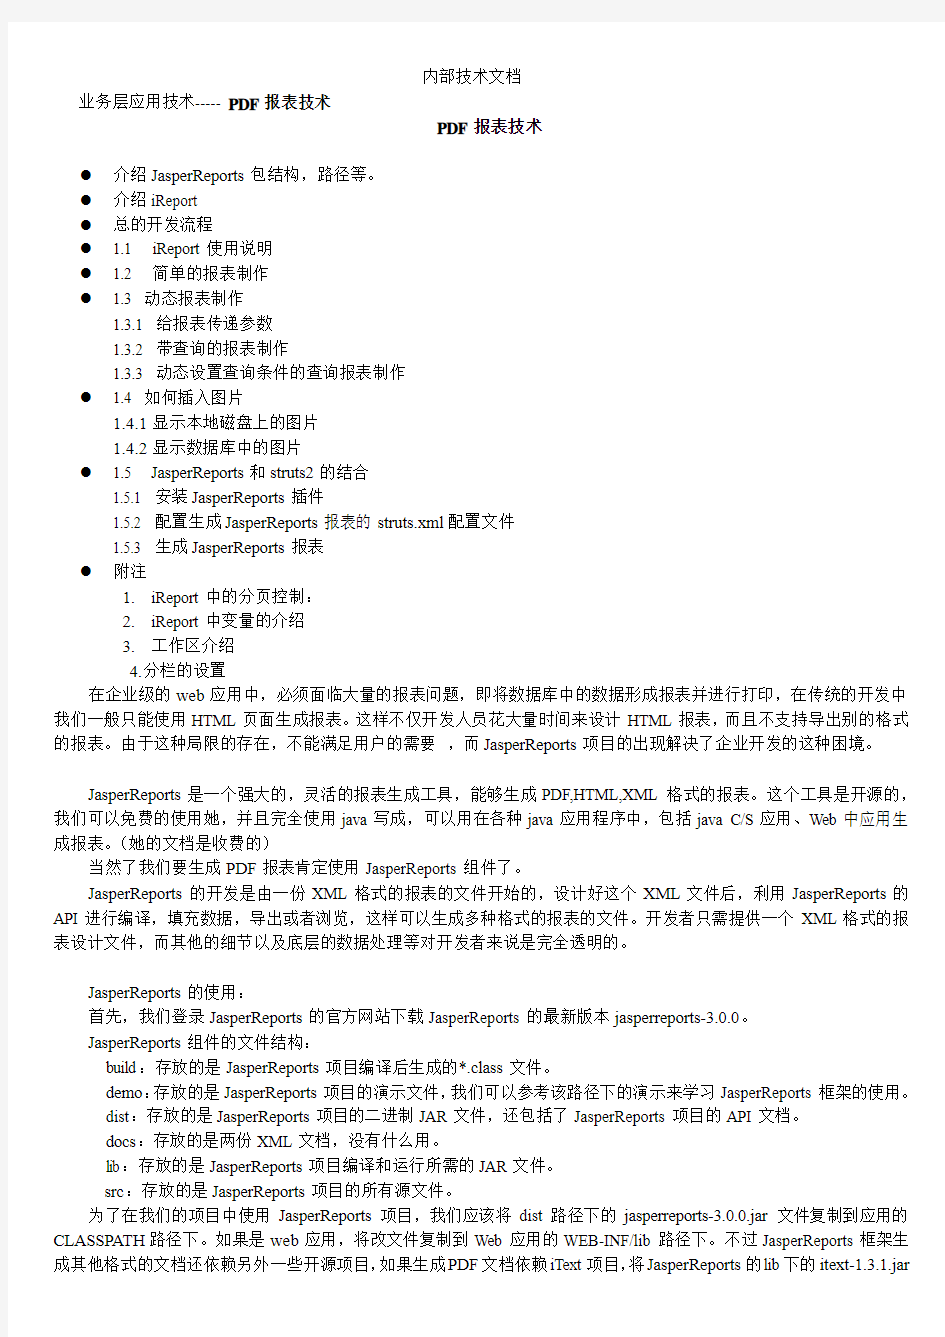 PDF报表技术文档